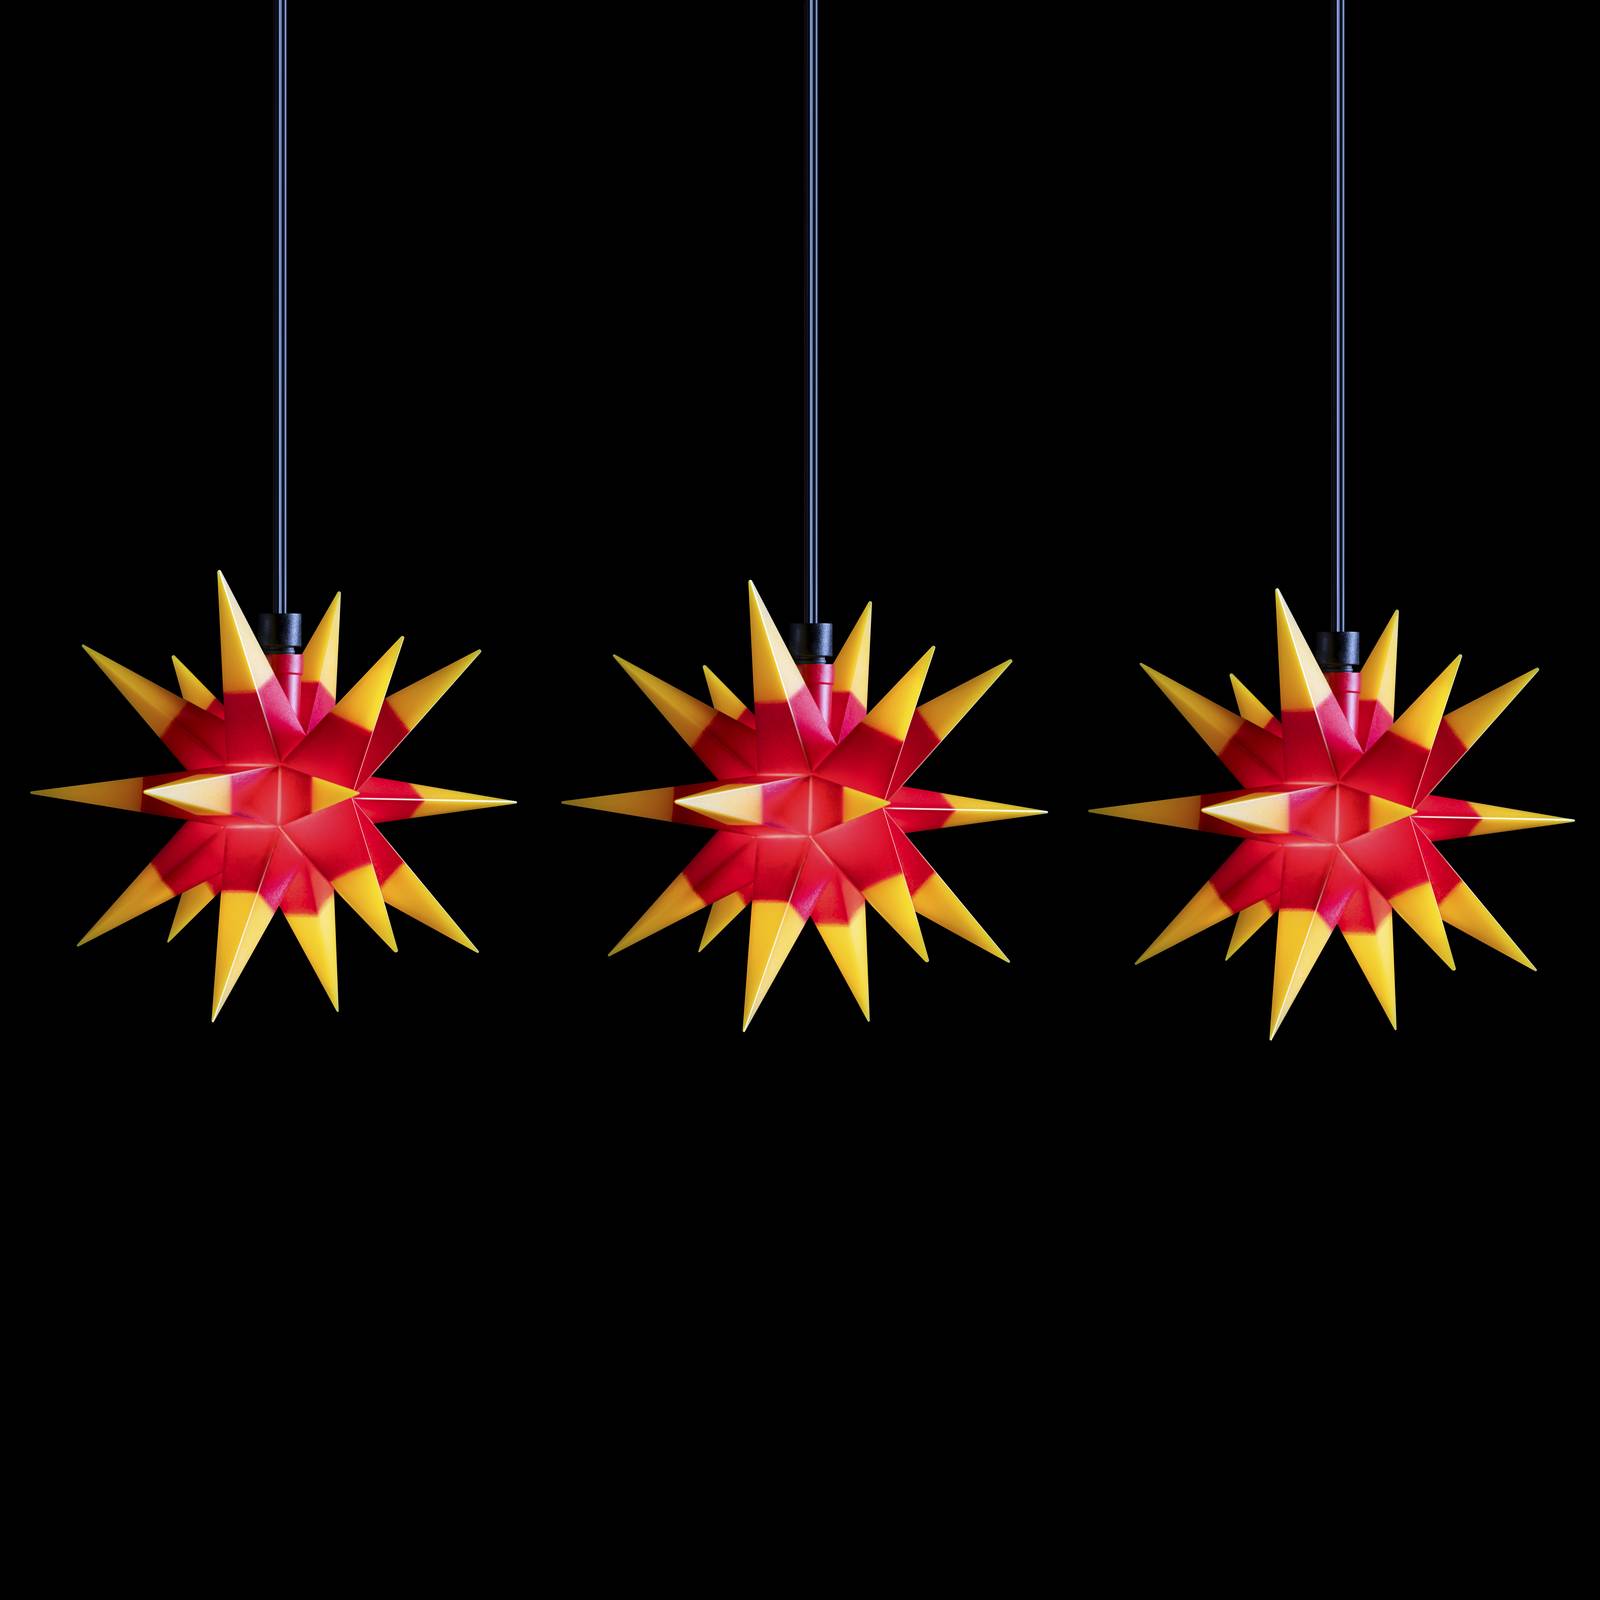 STERNTALER LED-Lichterkette Mini-Sterne außen 3-fl. rot/gelb